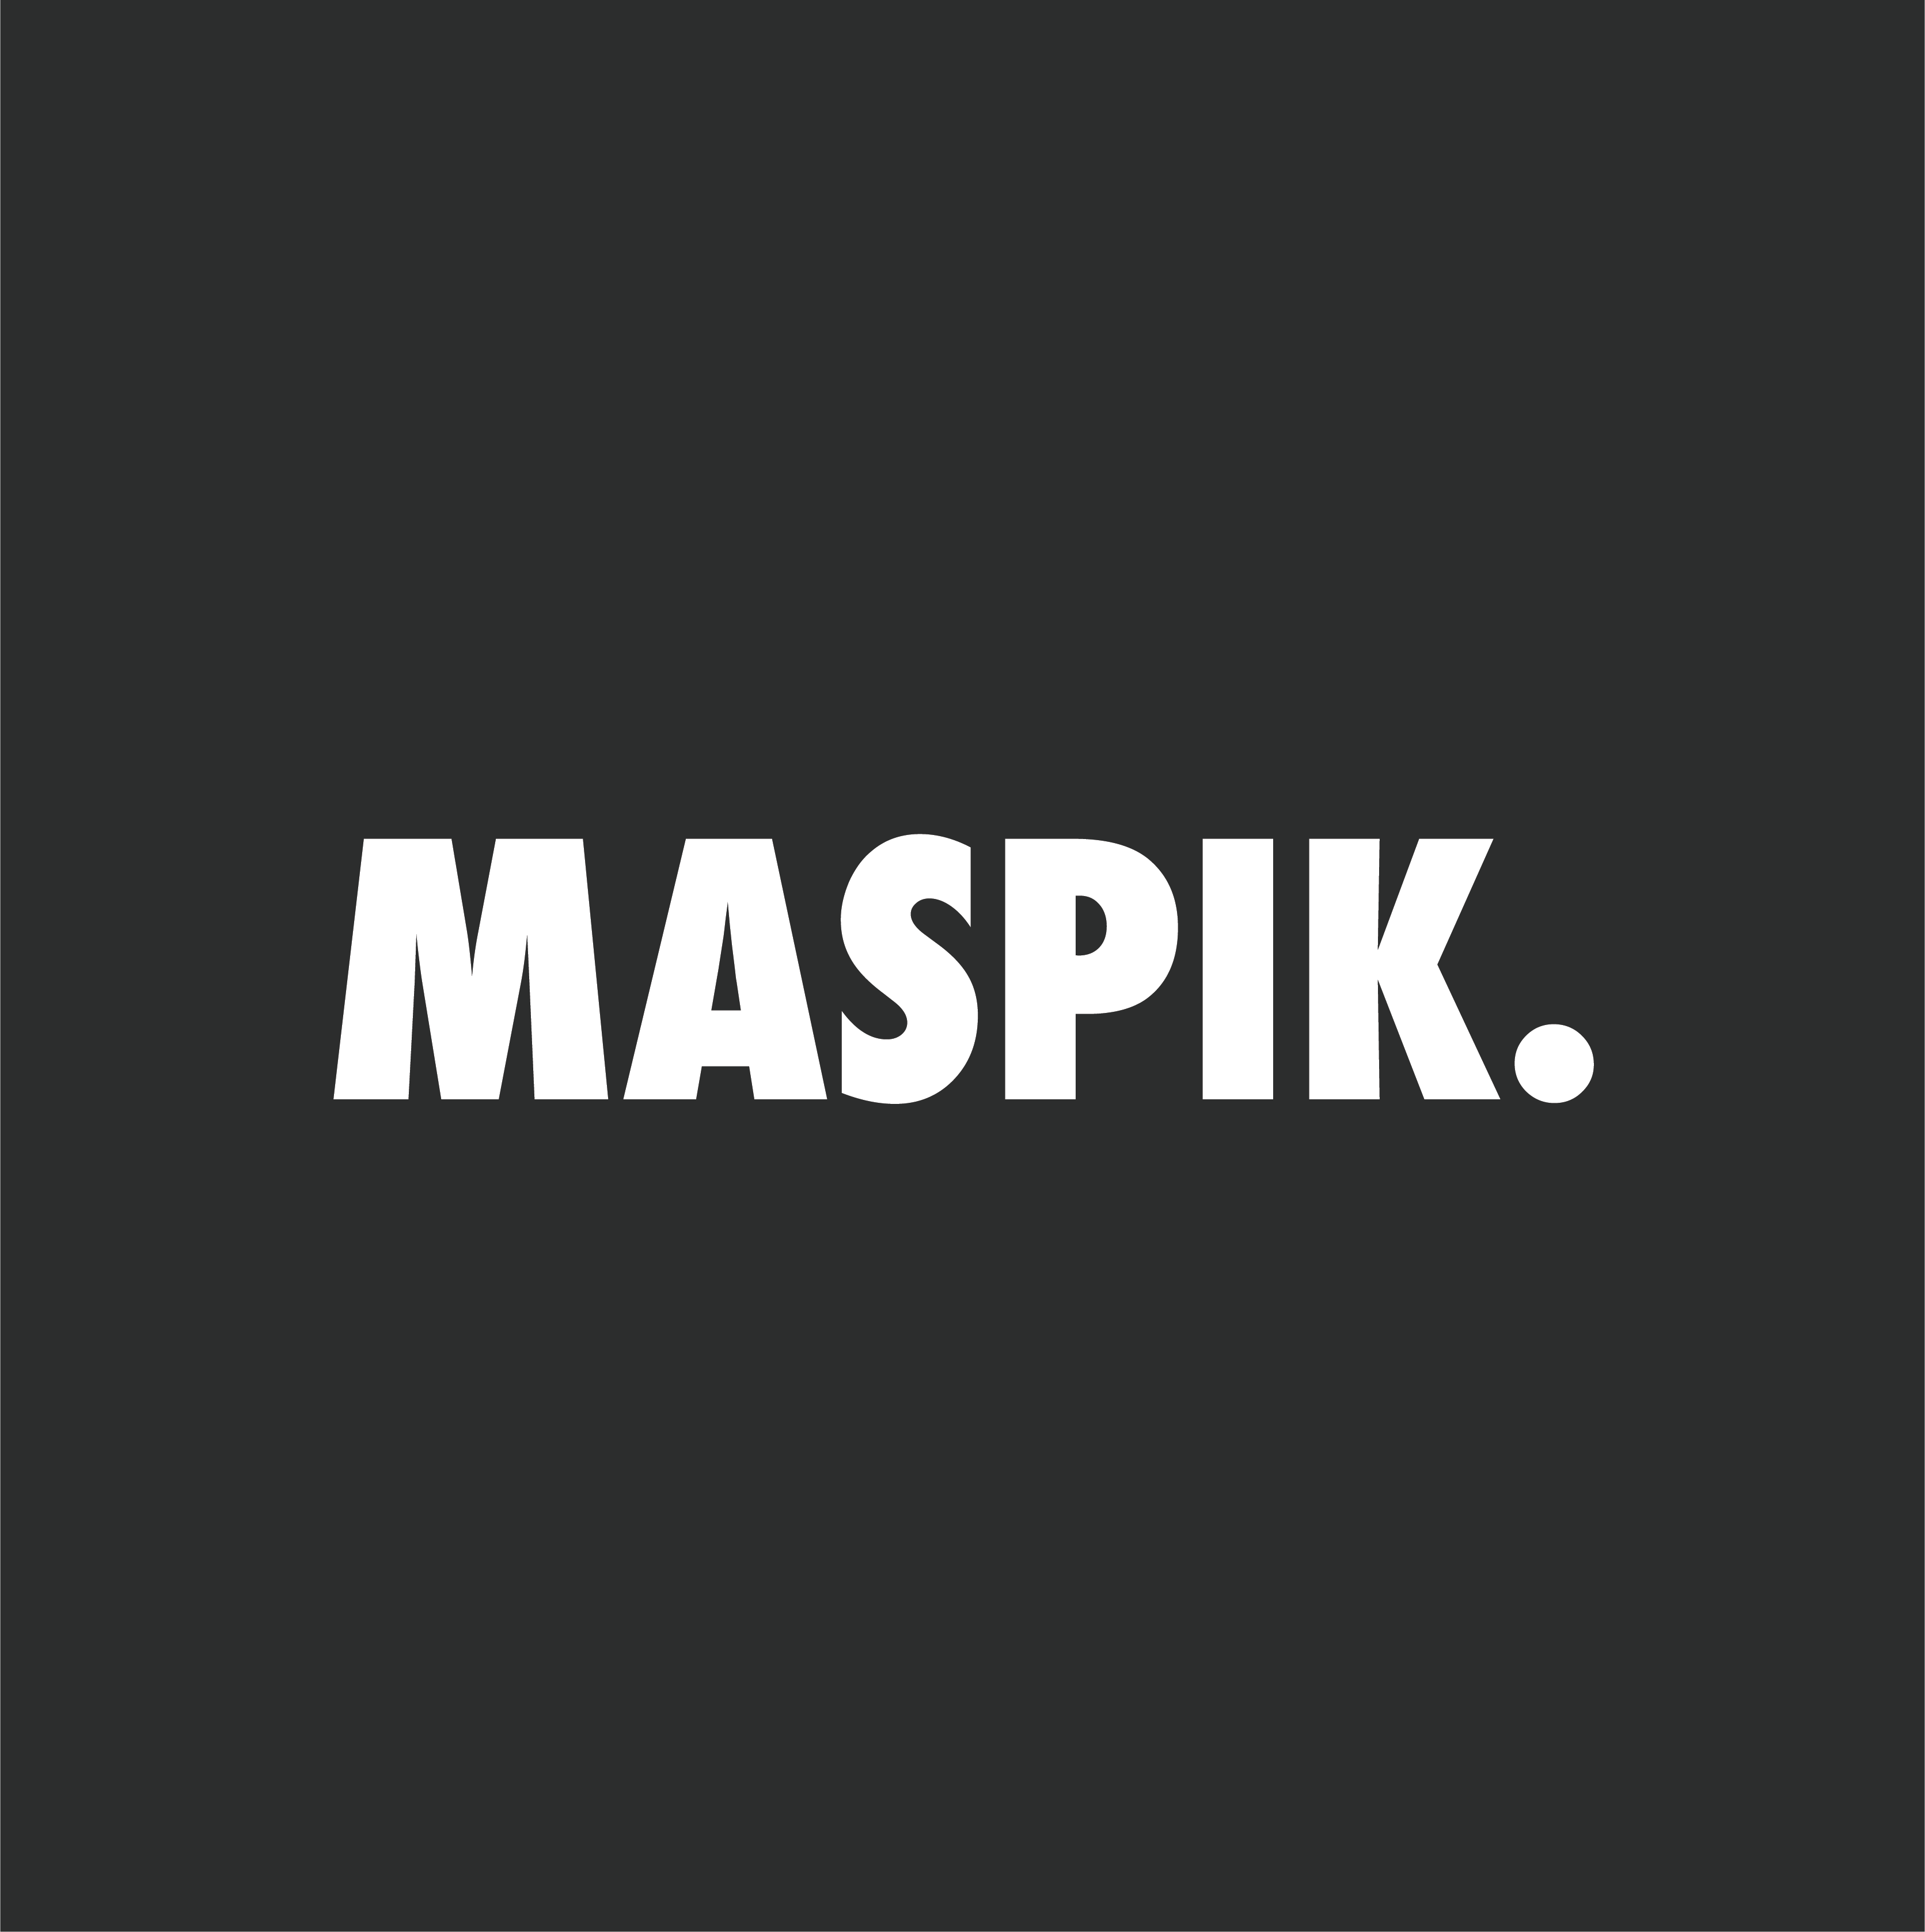 Maspik - Spam blacklist